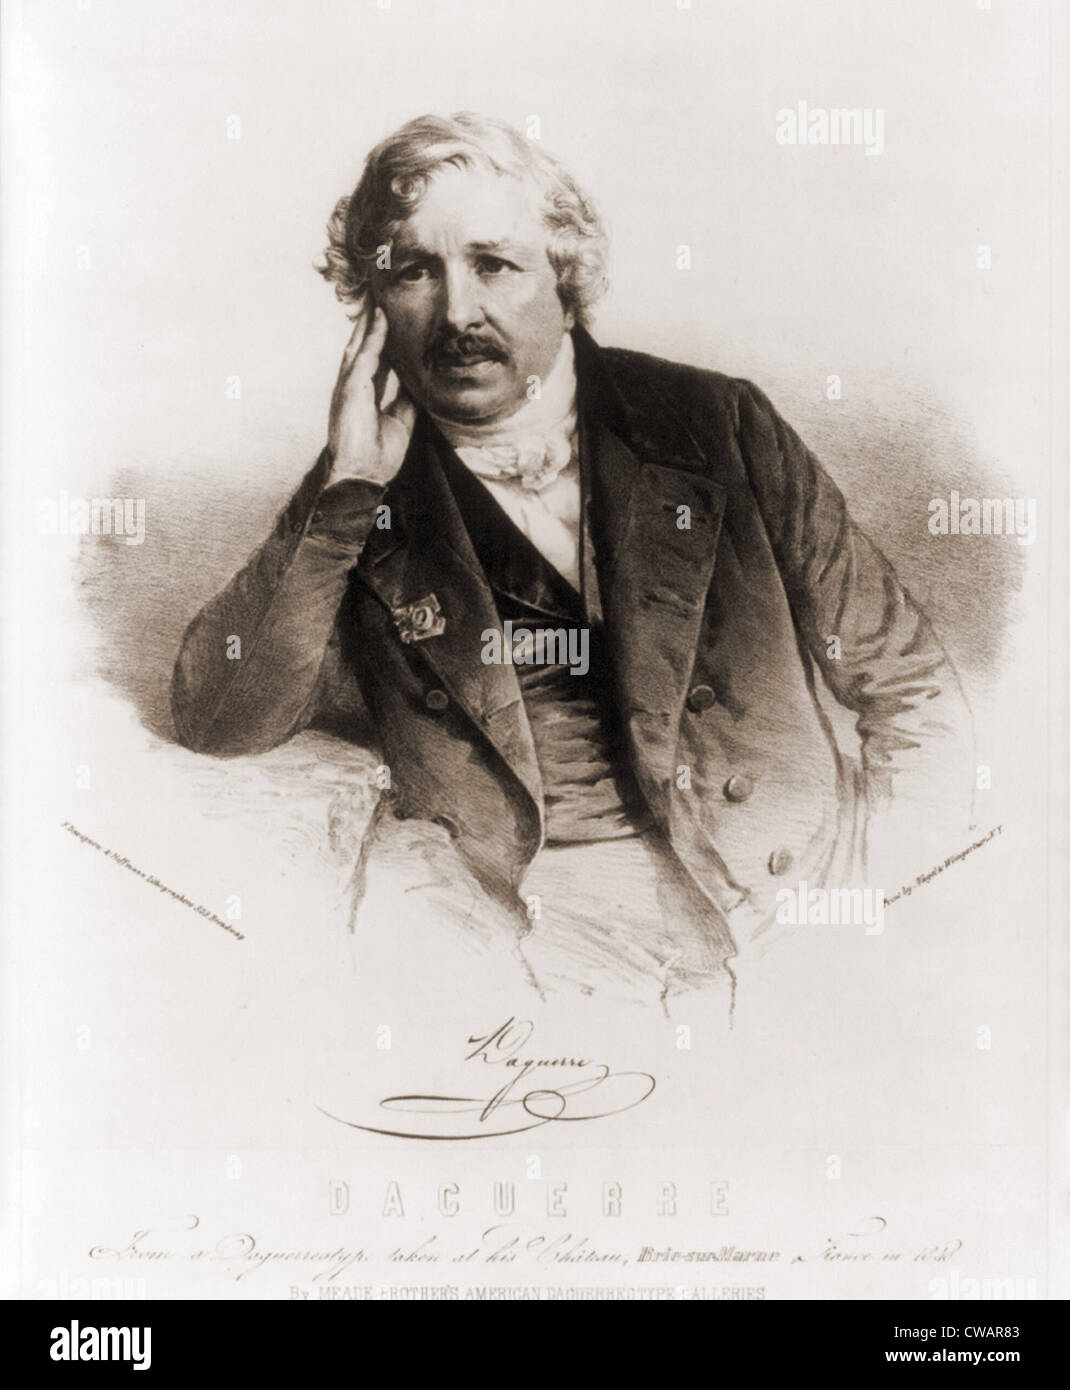 Louis Daguerre (1787-1851), französischer Erfinder der Daguerreotypie, die ersten fotografischen Prozesses im Jahre 1839. Ca. 1840. Stockfoto